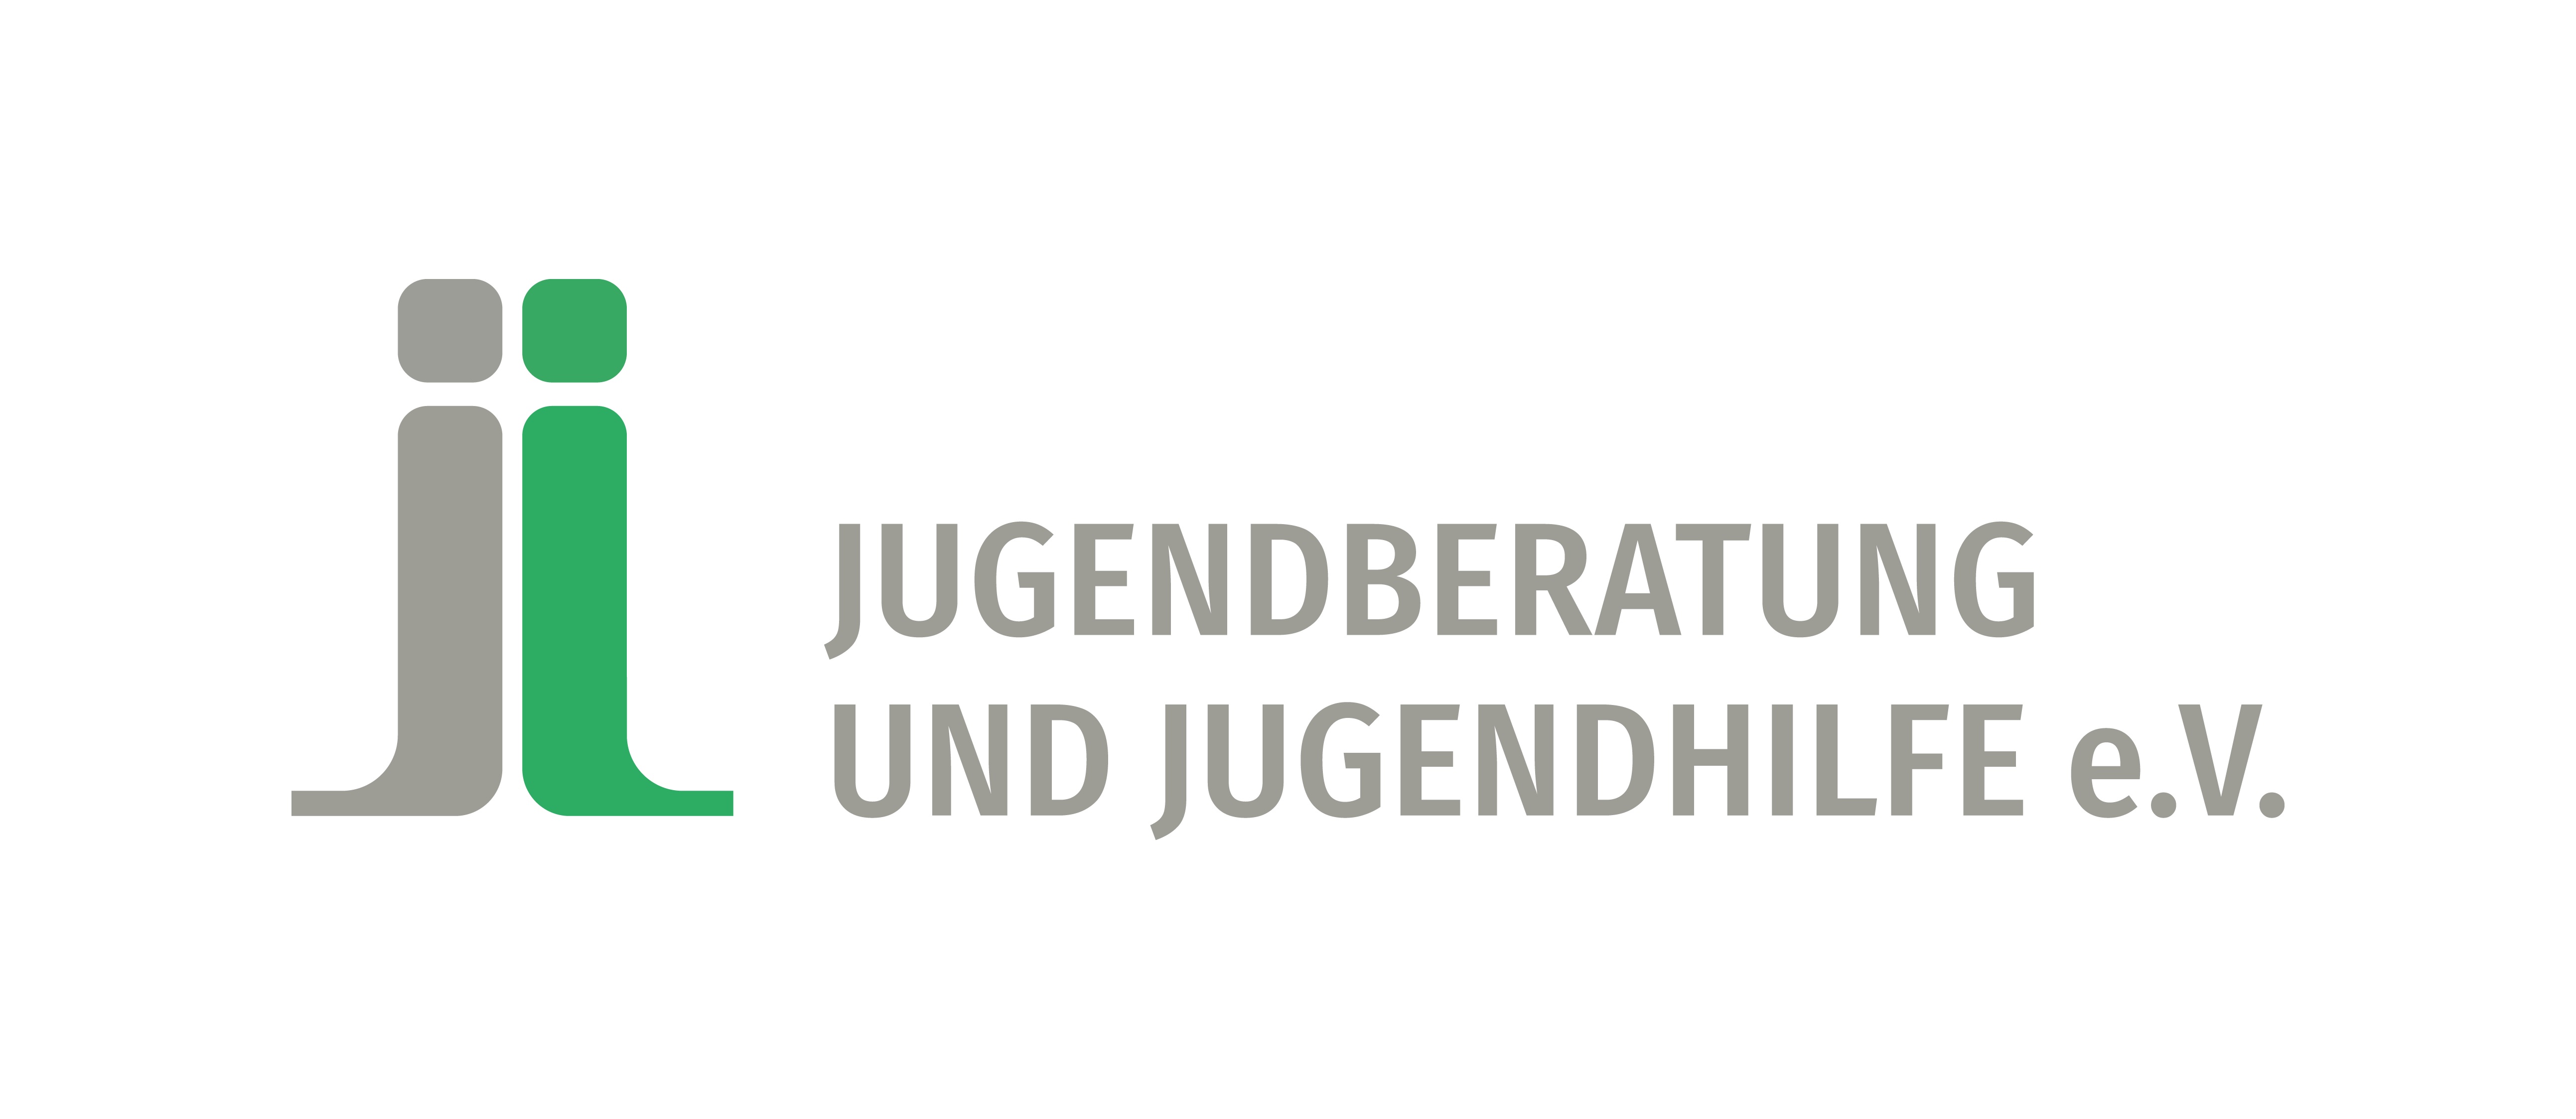 Logo von Jugendberatung und Jugendhilfe e.V. Stationäre Jugendhilfe - Eltern-Kind-Haus Weitblick